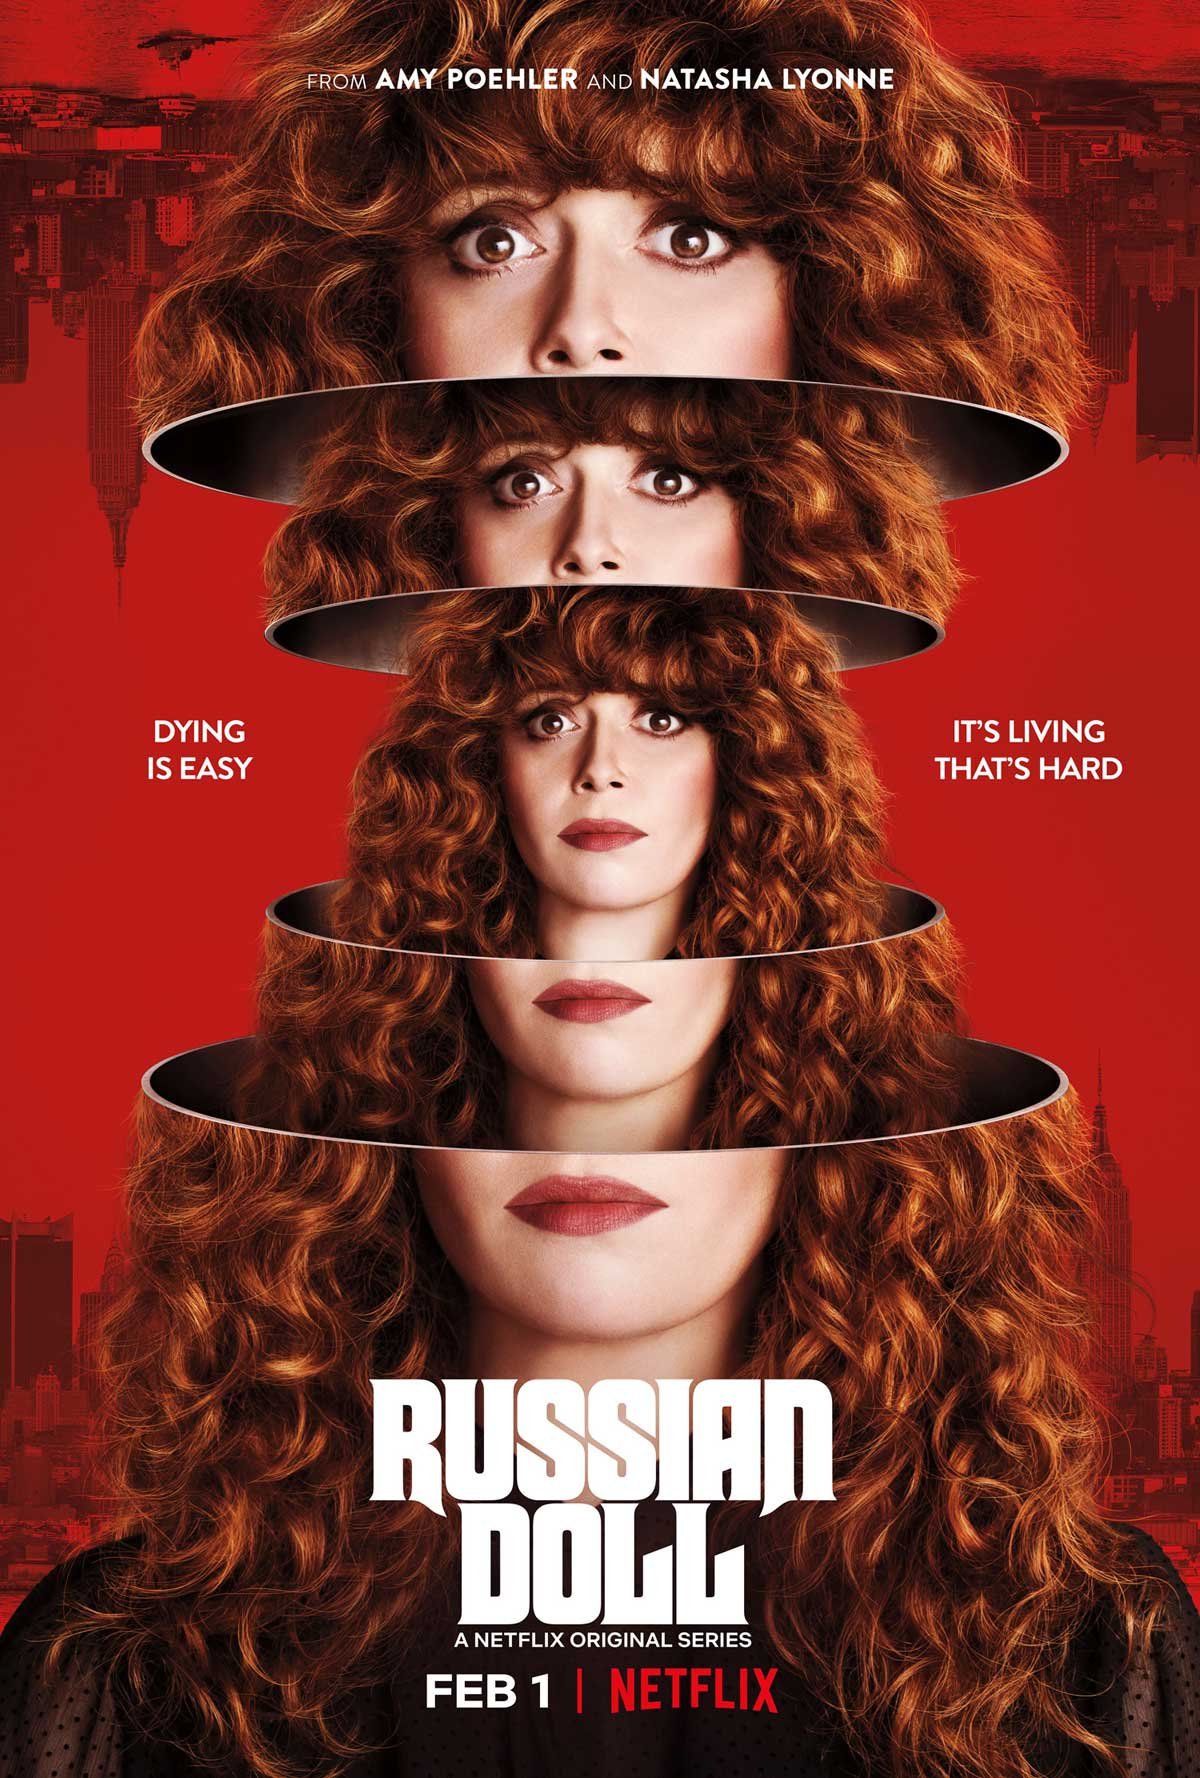 Boneca Russa Primeira Temporada | Netflix série de ficção científica existencial com Natasha Lyonne e Charlie Barnett